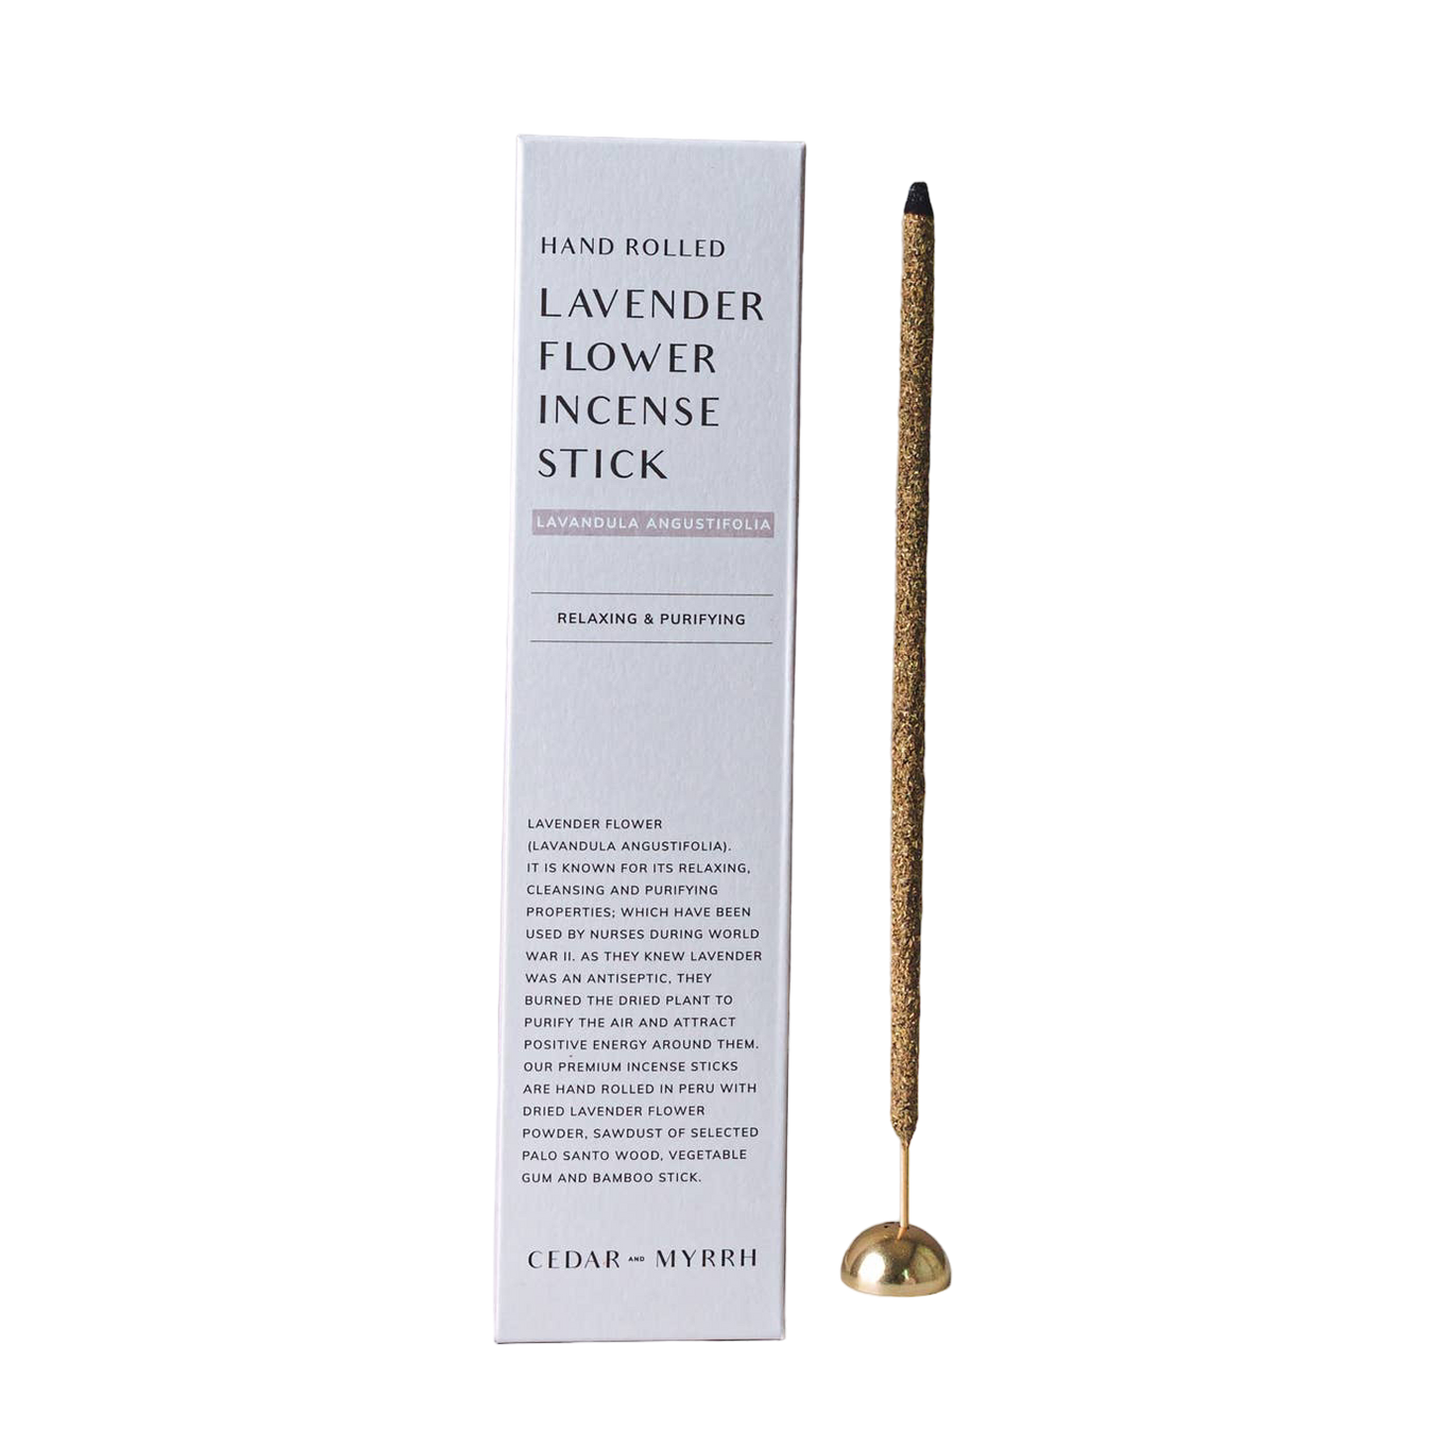 Hand Rolled Lavender Flower Incense Stick